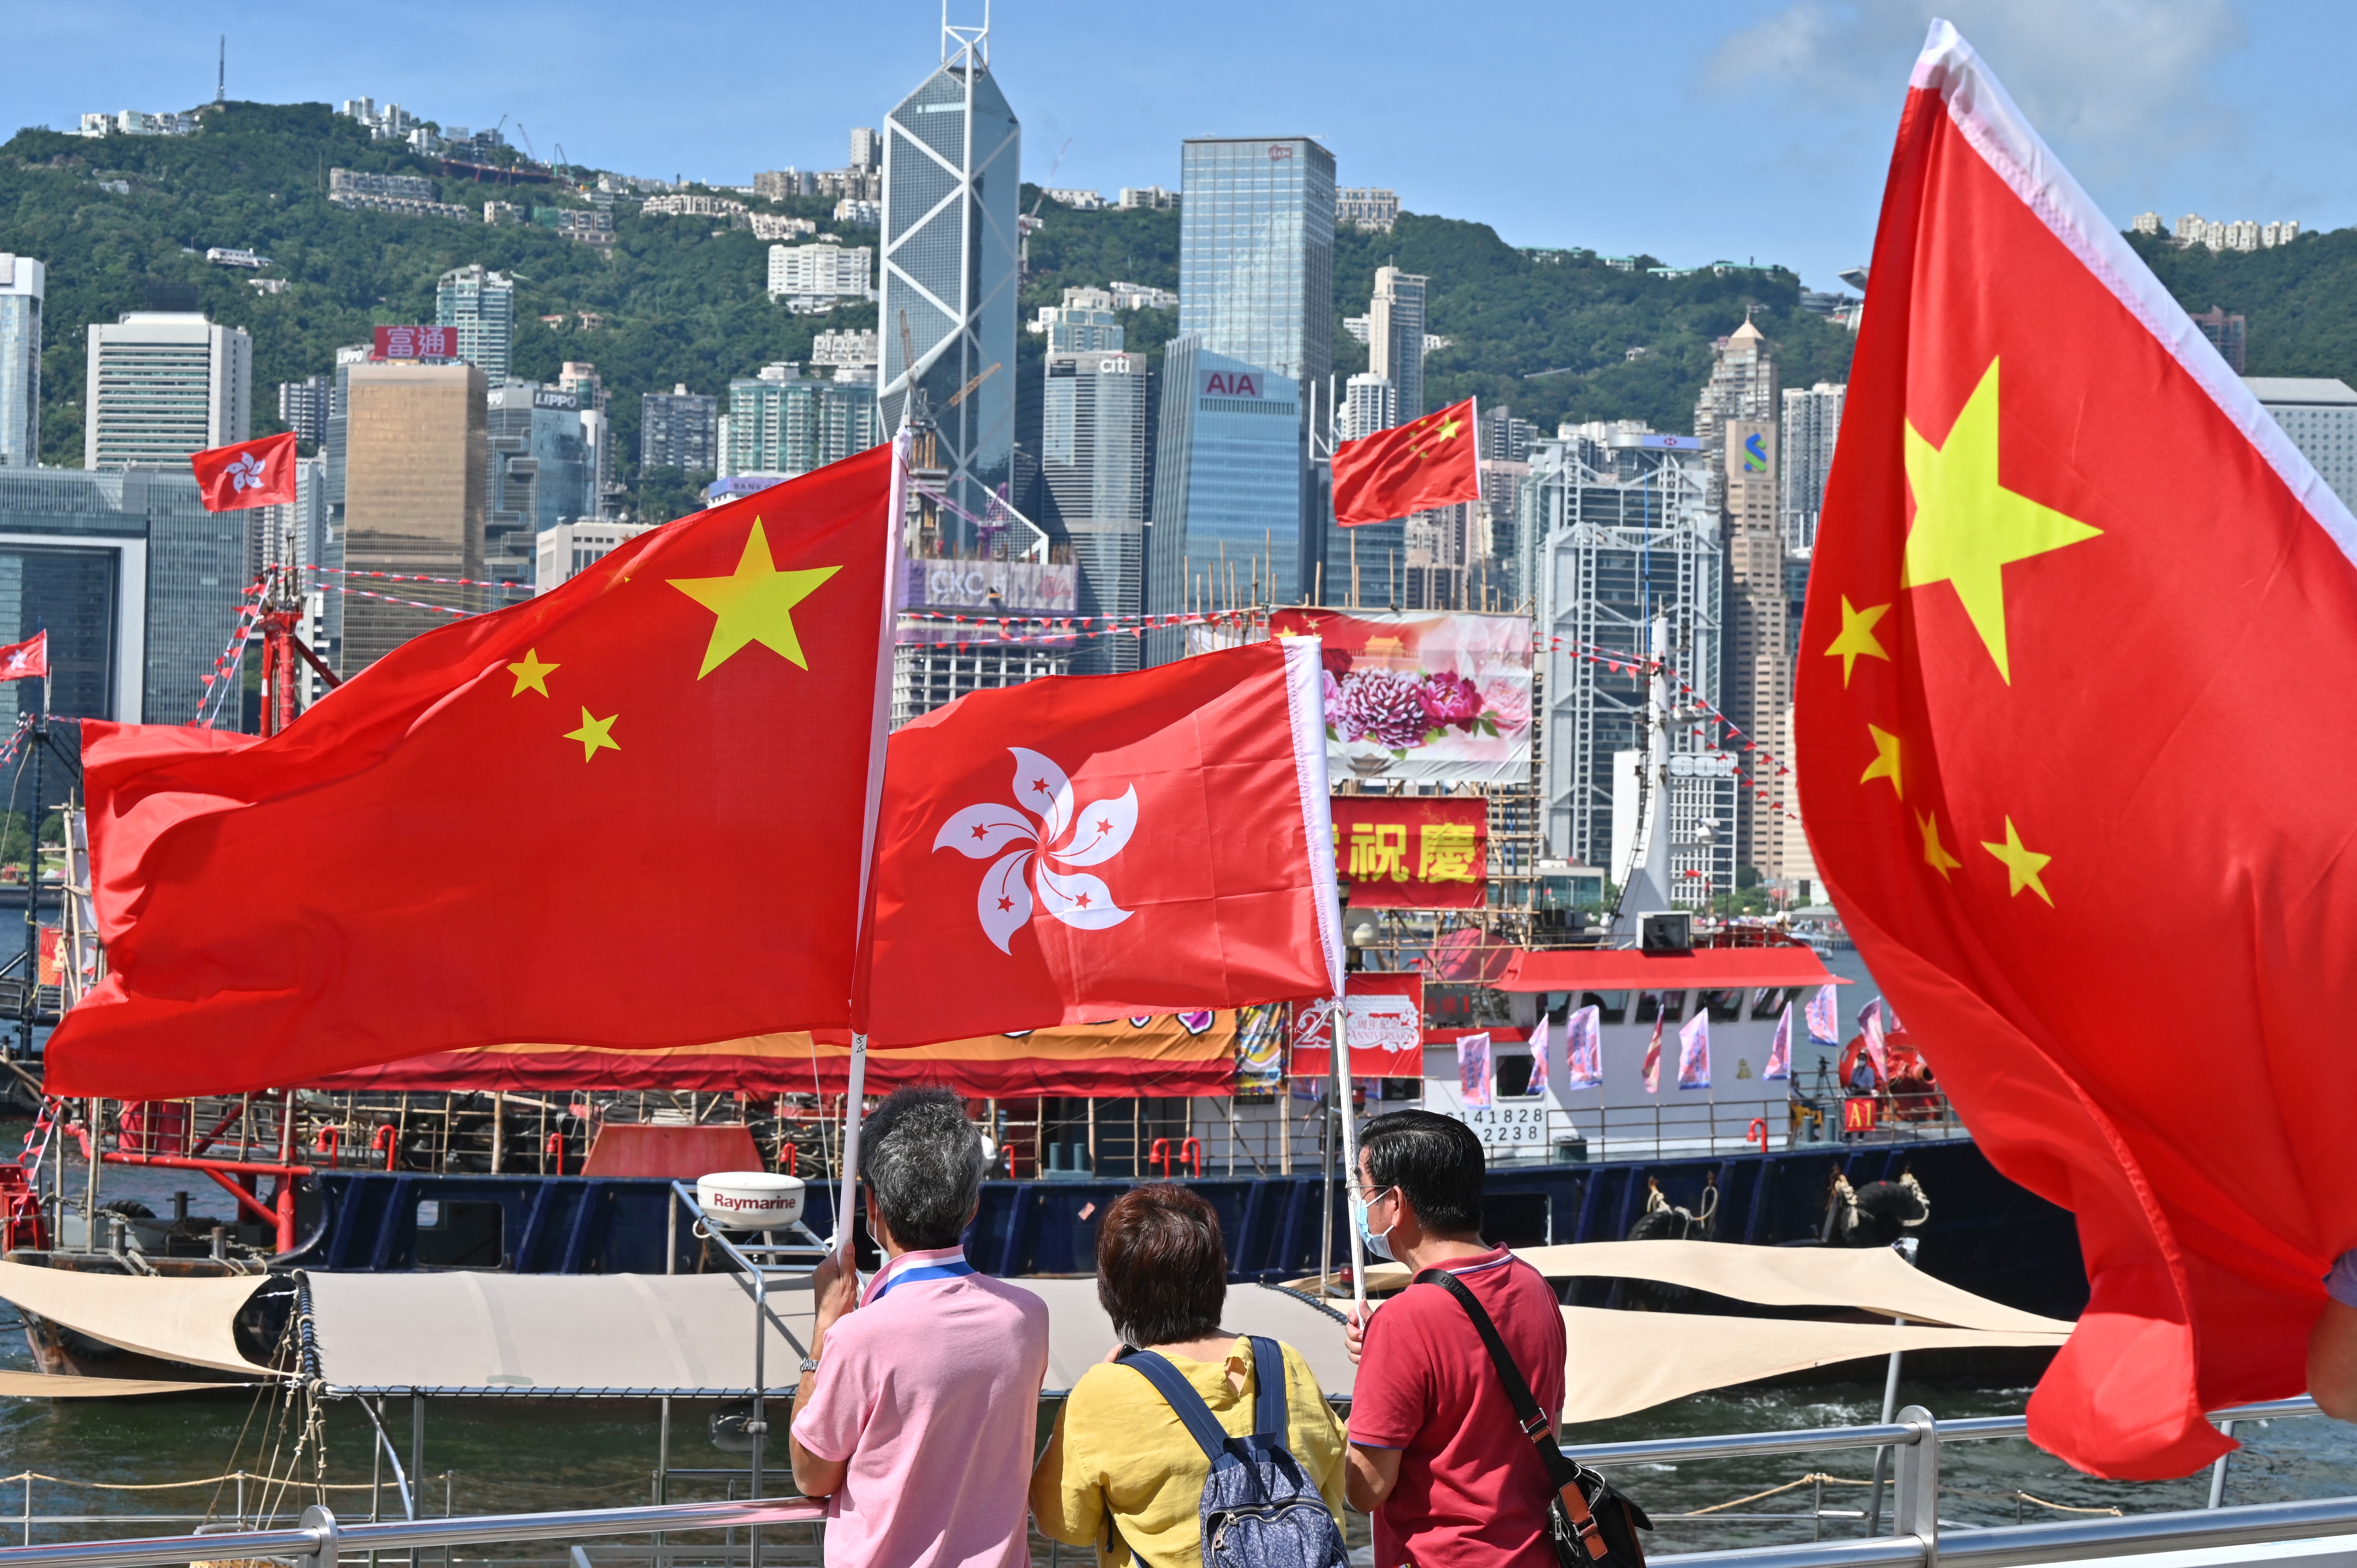 Hồng Kông - Sóng gió và tương lai sau 25 năm thuộc Trung Quốc: Được biết đến với vai trò là một trong những trung tâm tài chính của châu Á, Hồng Kông đã làm nên sự khác biệt với văn hóa và phong cách sống độc đáo. Từ quá khứ khó khăn cho đến hiện tại và tương lai sau 25 năm thuộc Trung Quốc, bức ảnh sẽ hiển thị sự phát triển của Hồng Kông và đặc thù của văn hóa và con người trong thành phố đồng thời cũng sẽ tạo ra những sự kết nối giữa người xem với thành phố.